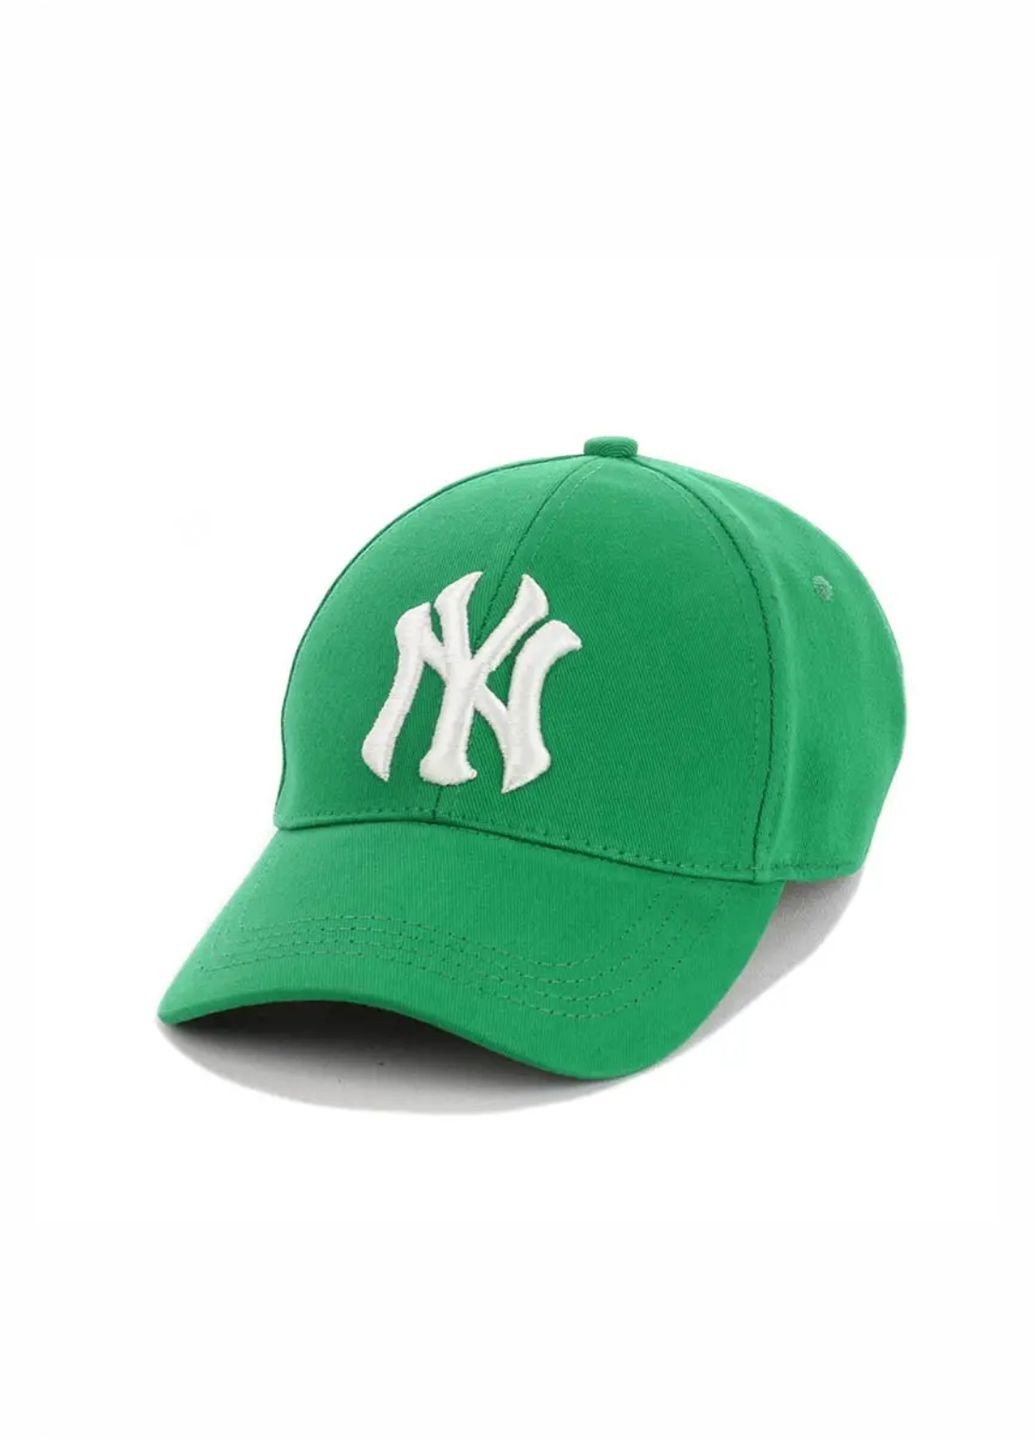 Молодежная кепка Нью Йорк / New York S/M No Brand кепка унісекс (278649838)